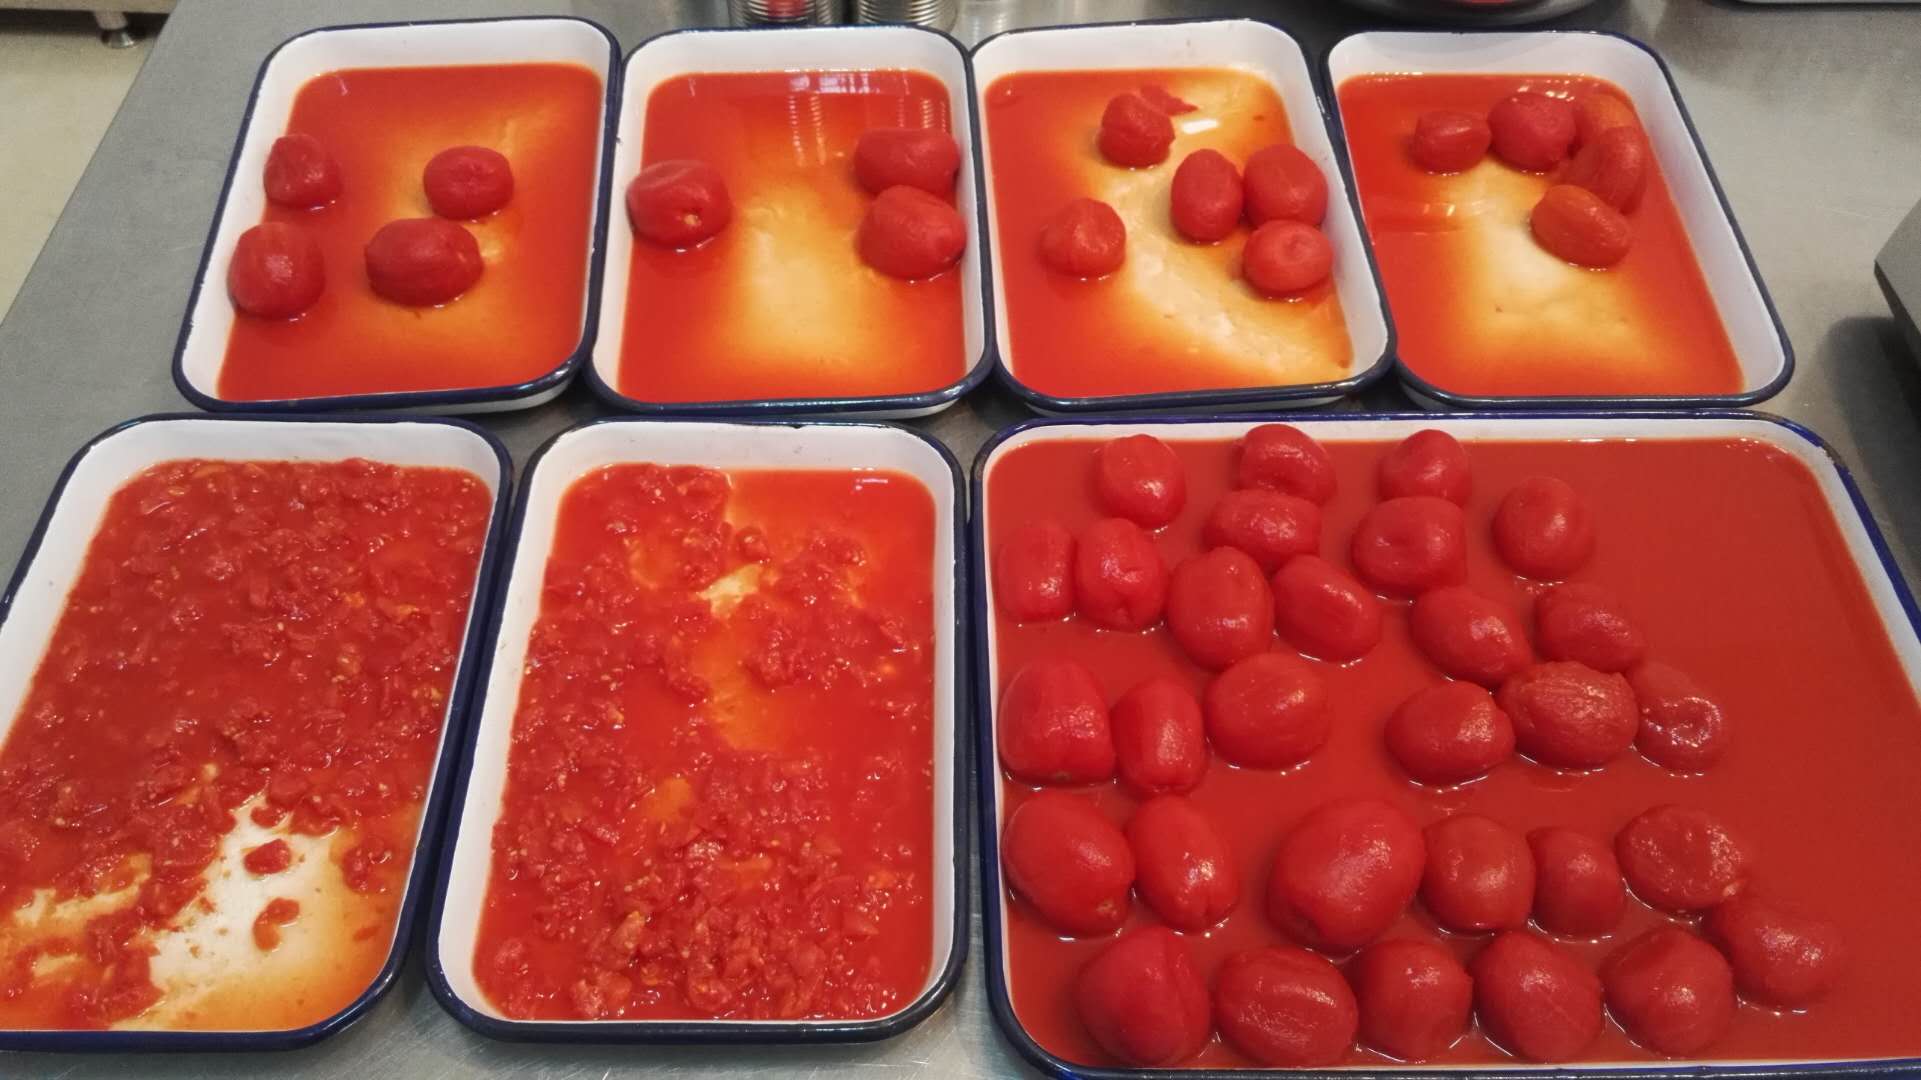 Tomatenwürfel in der Dose 400g,800g,2500g,2850g